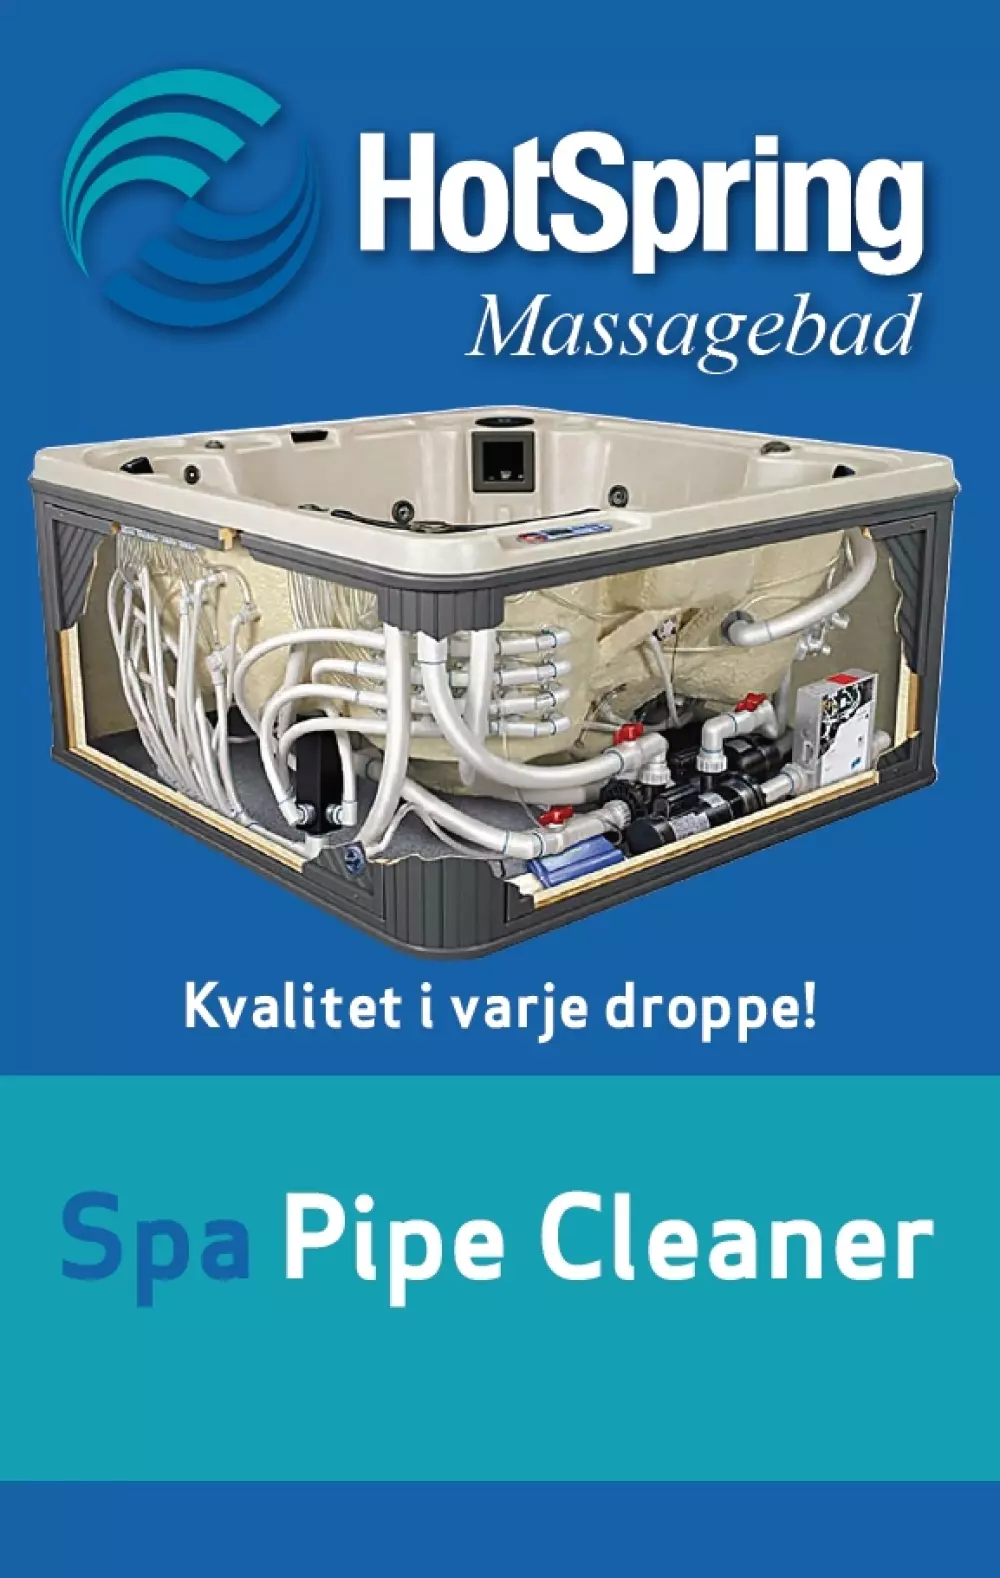 Spa pipe cleaner - rørrens 1 liter, 7340152910622, 100038, HOTSPRING Spa Pipe Cleaner, 1,0 ltr flaska, 4548001HS, Hindrer bakterievekst i belegget som dannes i rørene